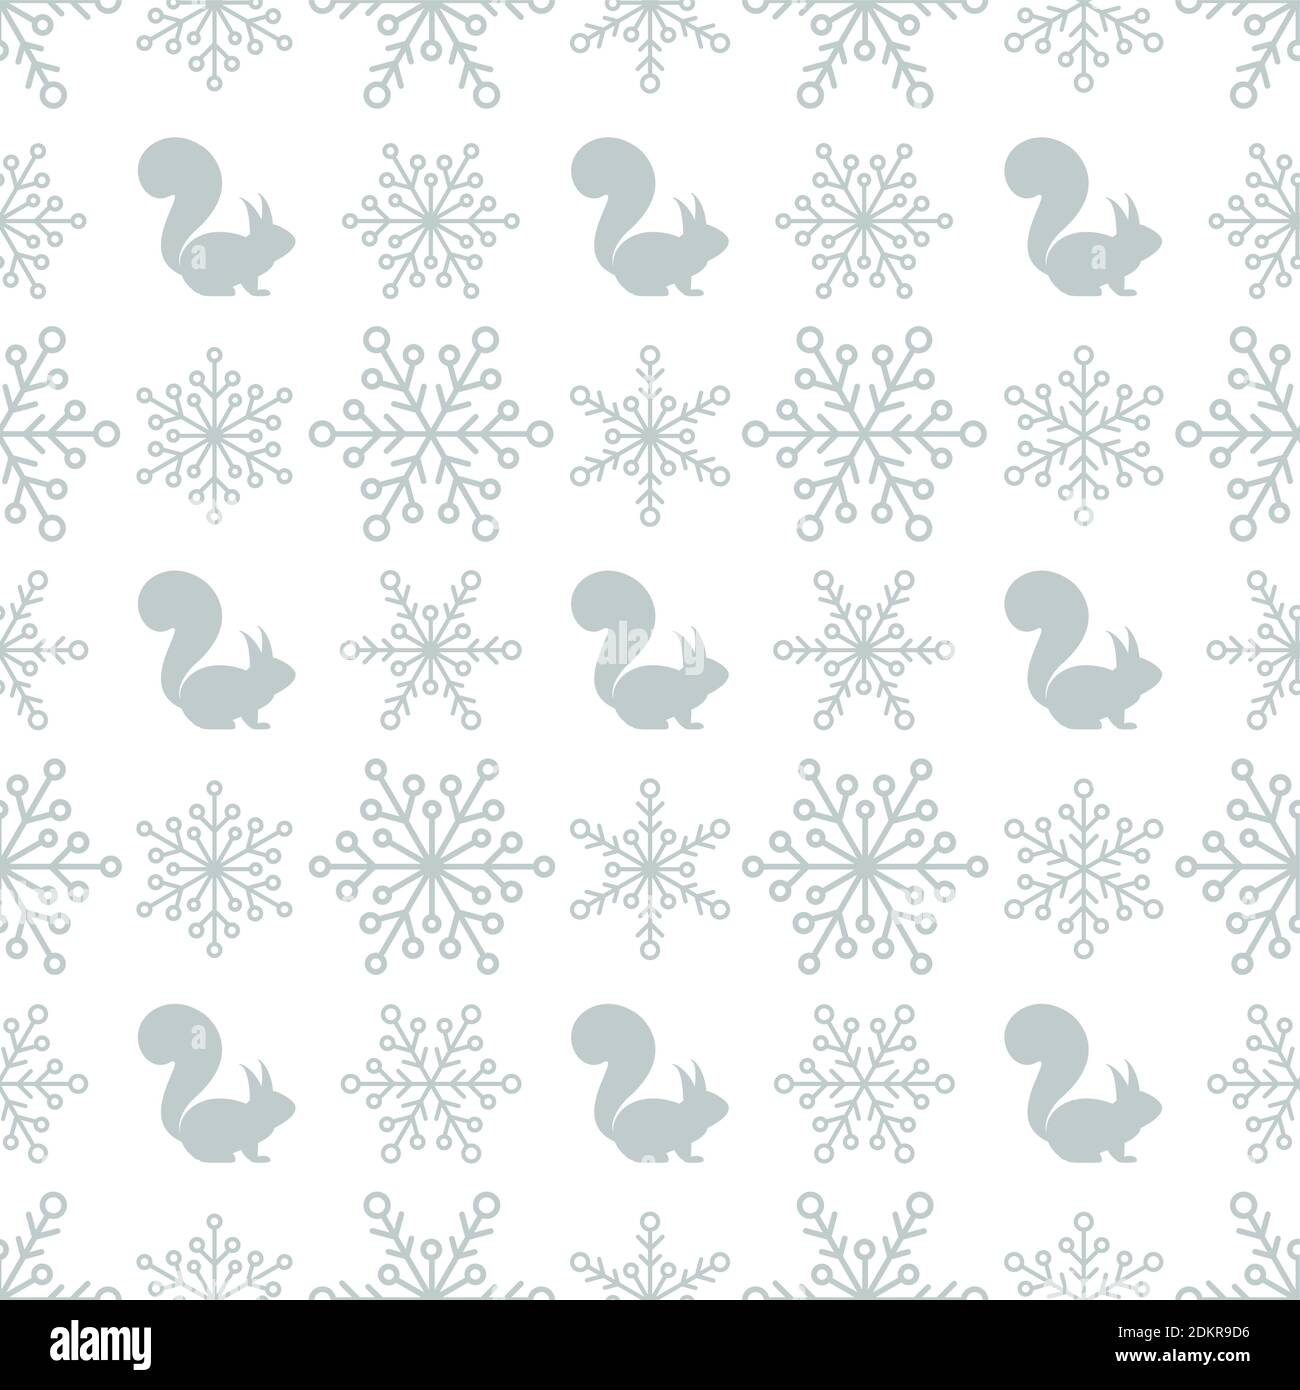 Nahtlose karierte Winter-Muster mit silbergrauen Schneeflocken und Eichhörnchen. vektor flach Weihnachtsschmuck auf weißem Hintergrund. Winter-Textur. Stock Vektor